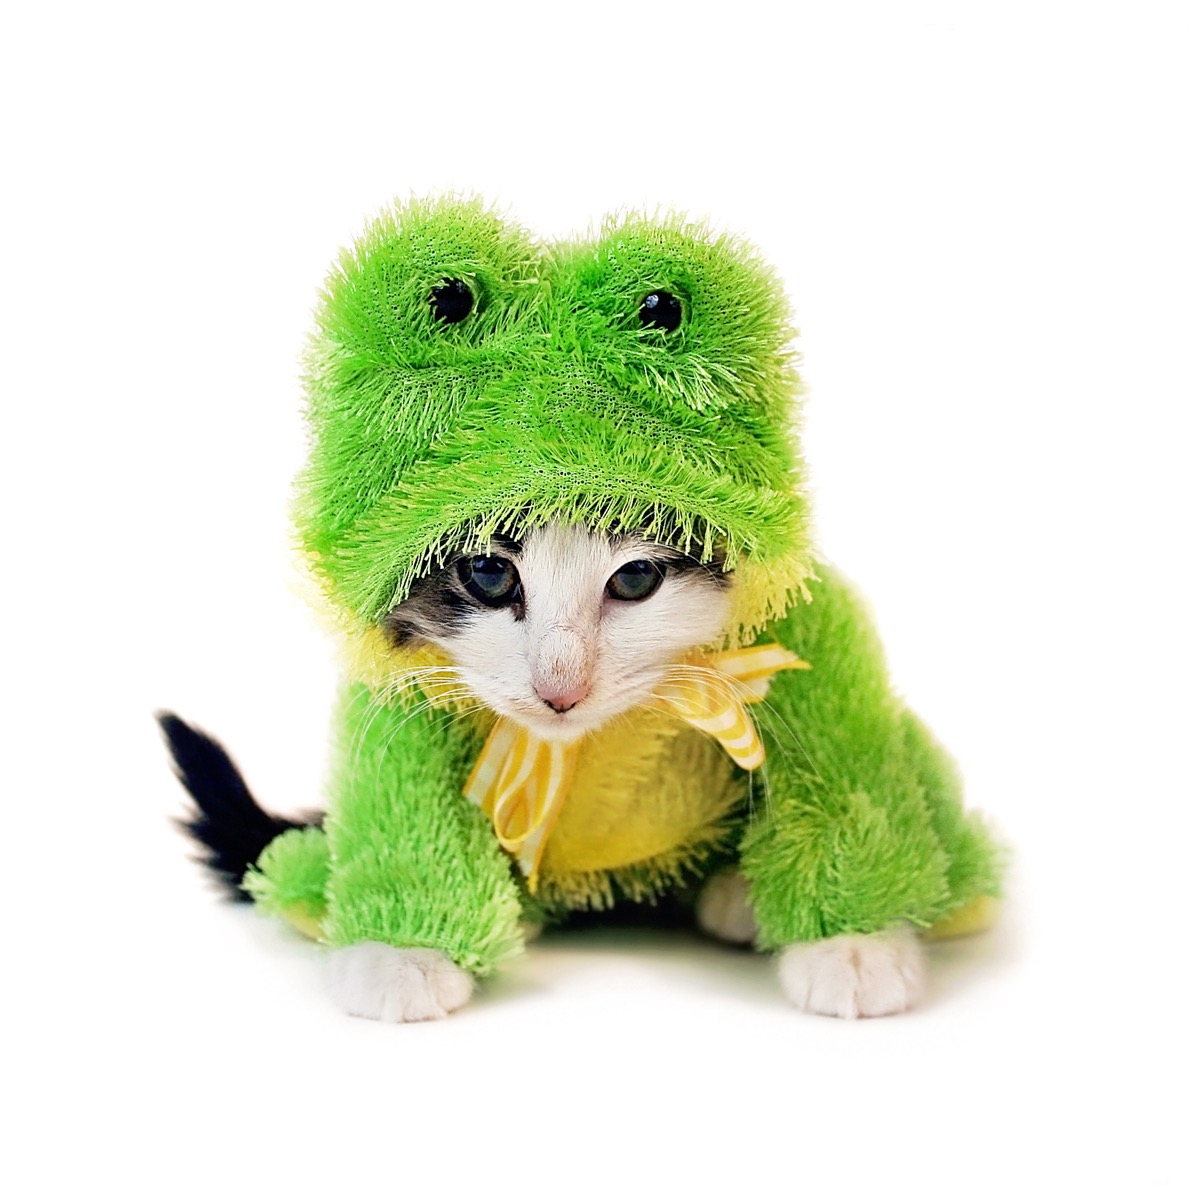 frog kitten